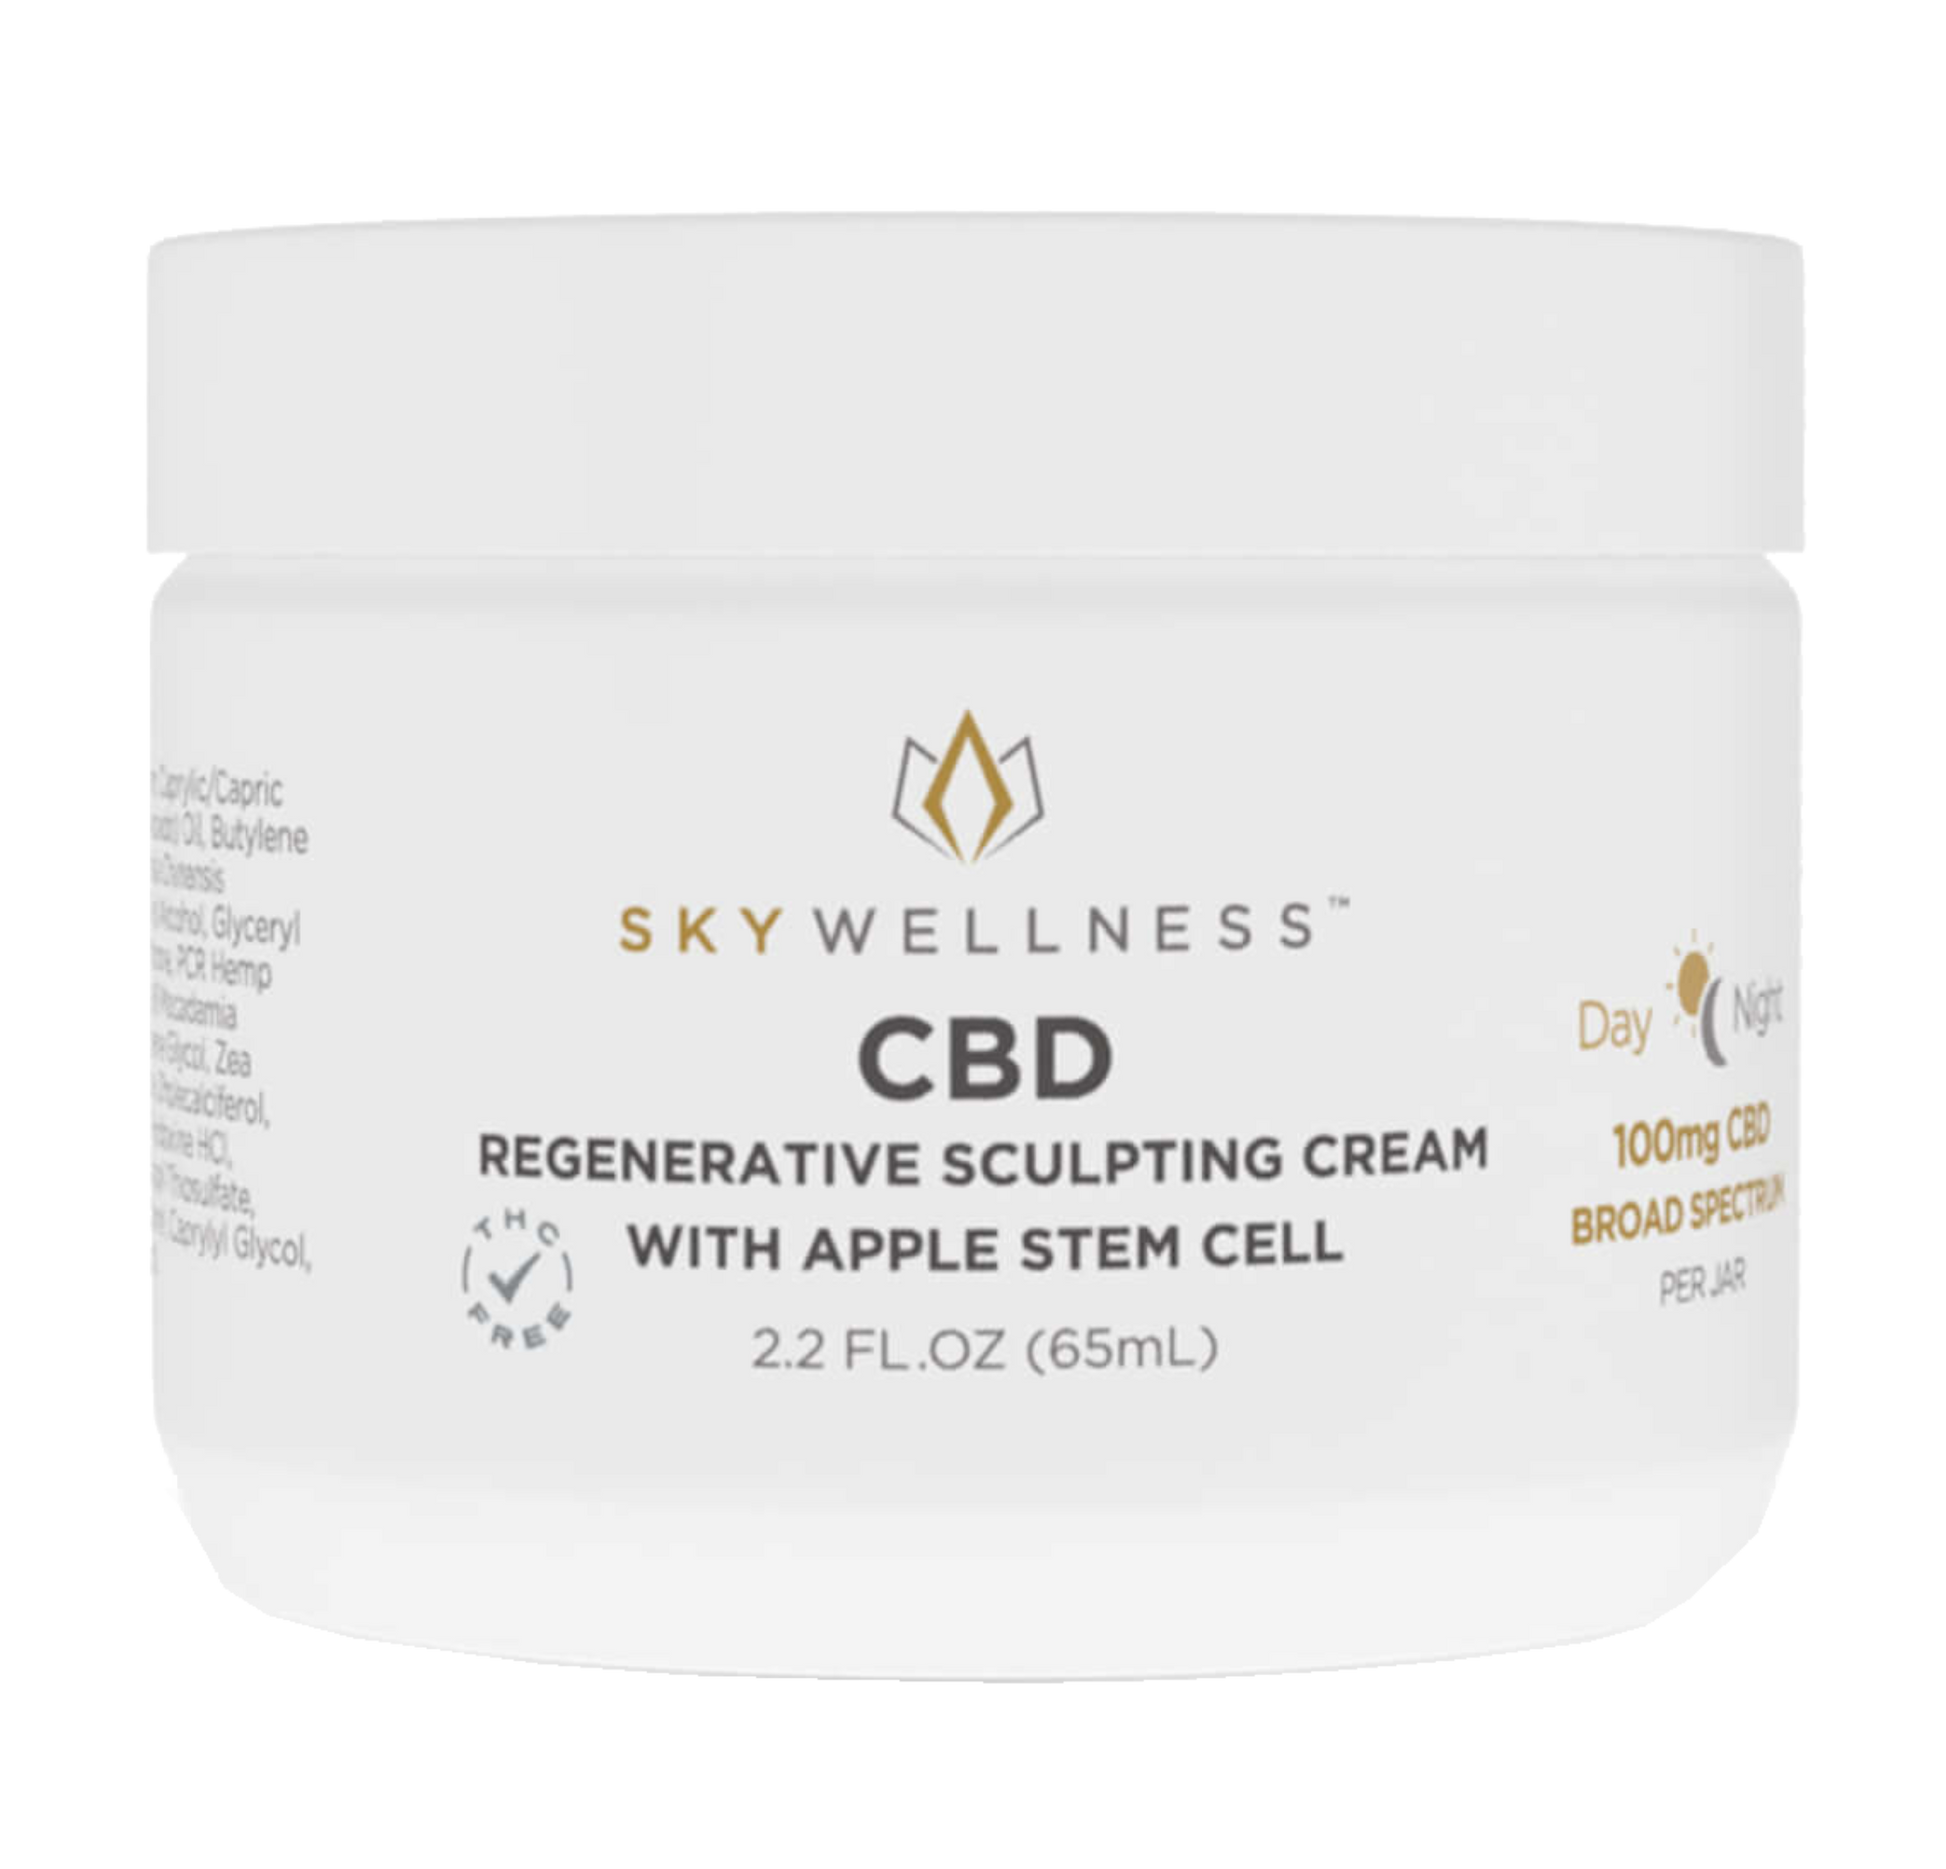 Sky Wellness Broad Spectrum CBD Cream, Regenerative Sculpting - 100mg (a Cream) made by Sky Wellness sold at CBD Emporium